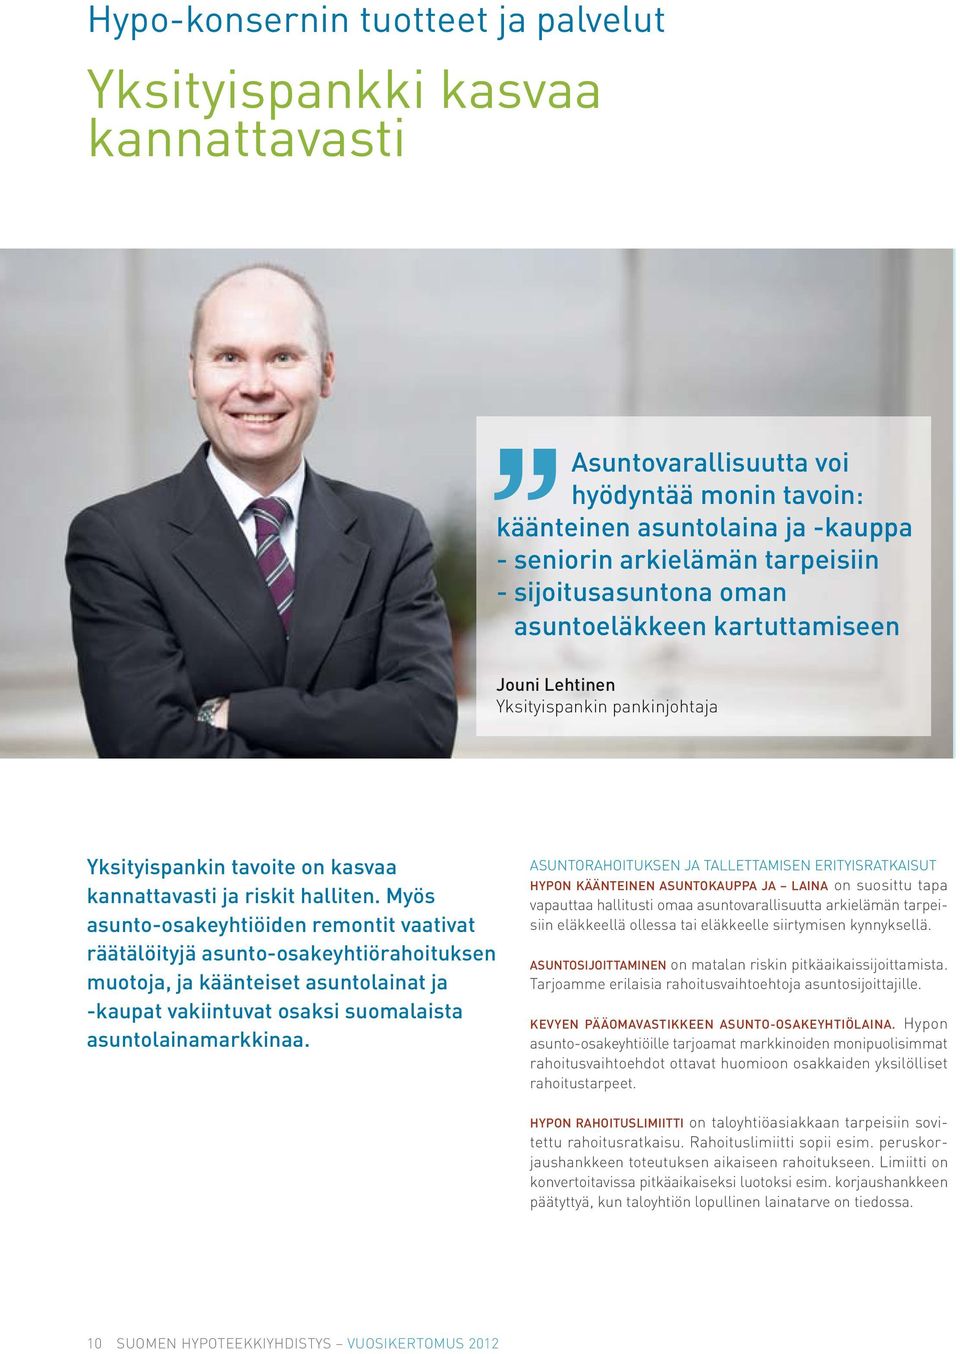 Myös asunto-osakeyhtiöiden remontit vaativat räätälöityjä asunto-osakeyhtiörahoituksen muotoja, ja käänteiset asuntolainat ja -kaupat vakiintuvat osaksi suomalaista asuntolainamarkkinaa.